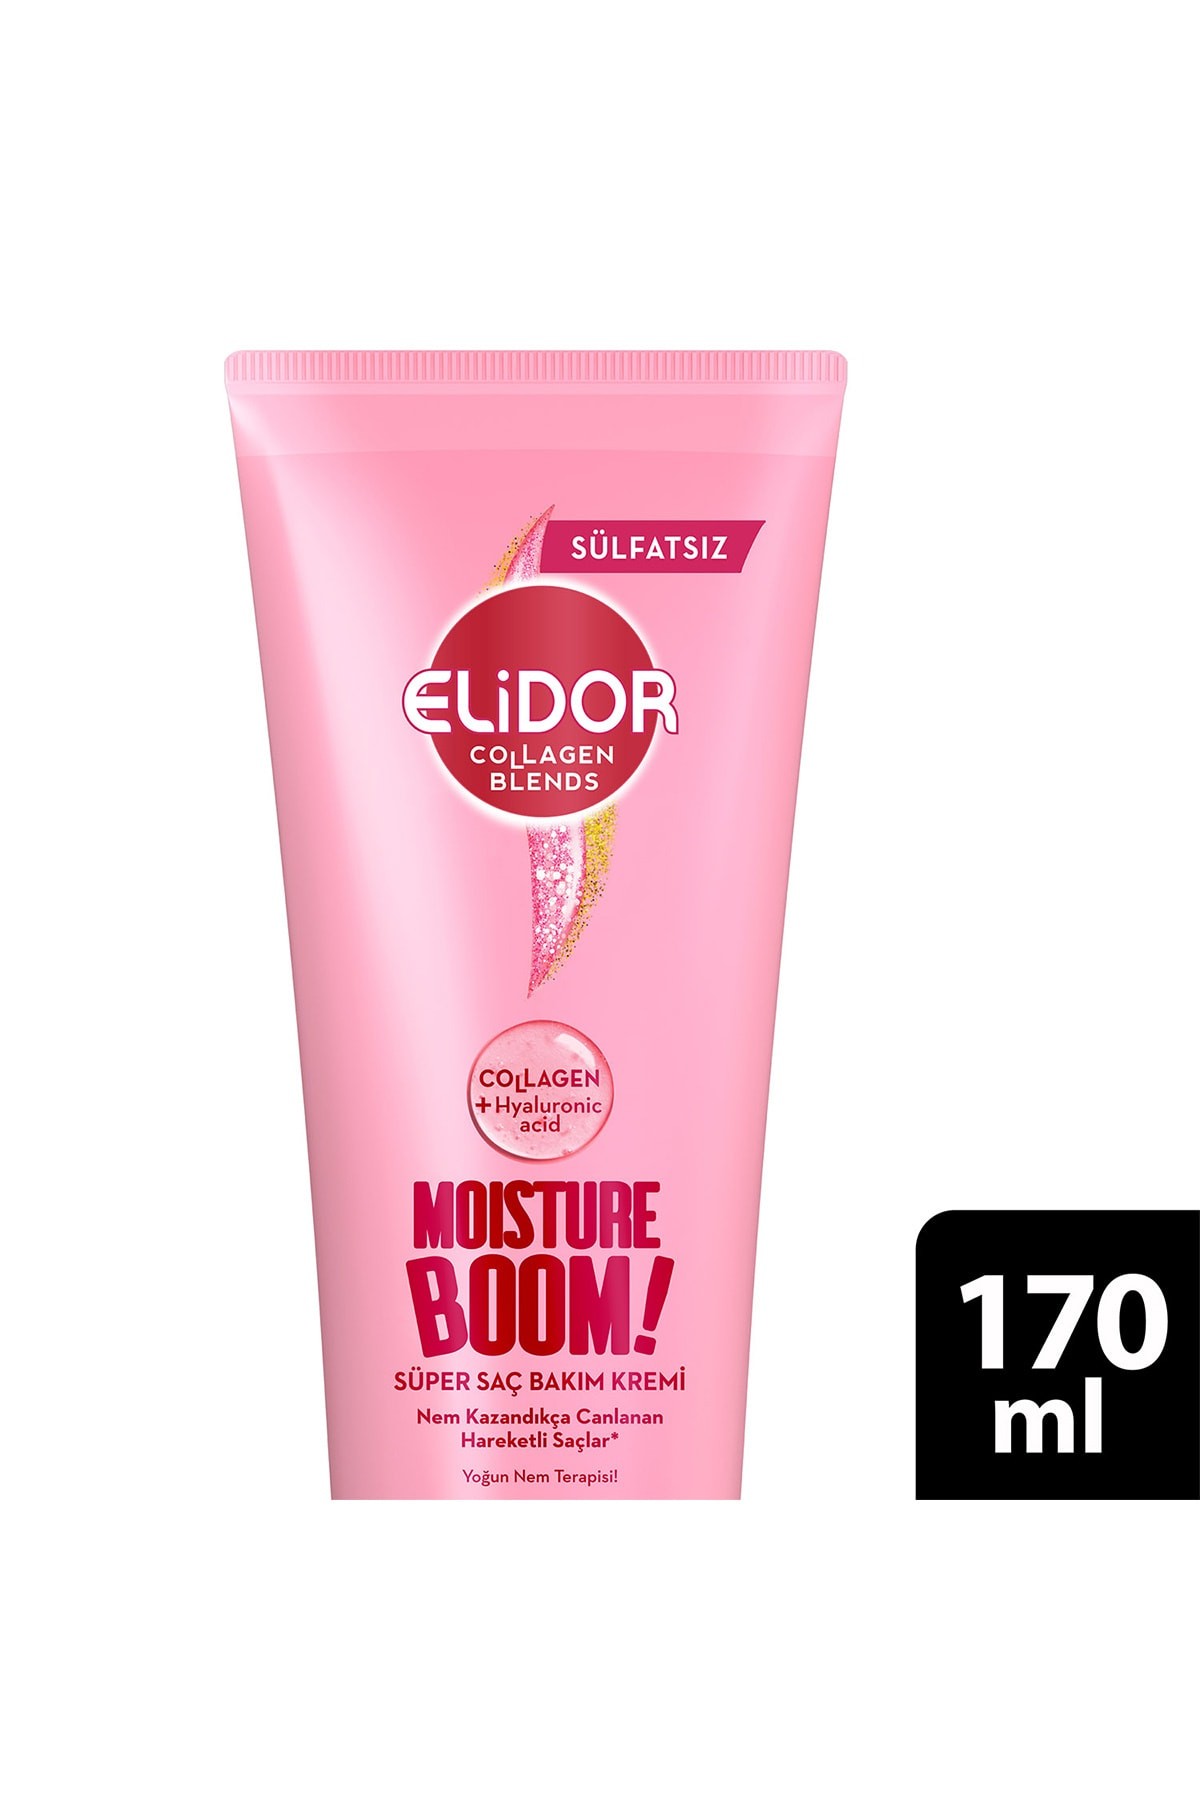 Elidor Collagen Blends Moısture Boom Yoğun Nem Terapisi Süper Saç Bakım Kremi 170 ml